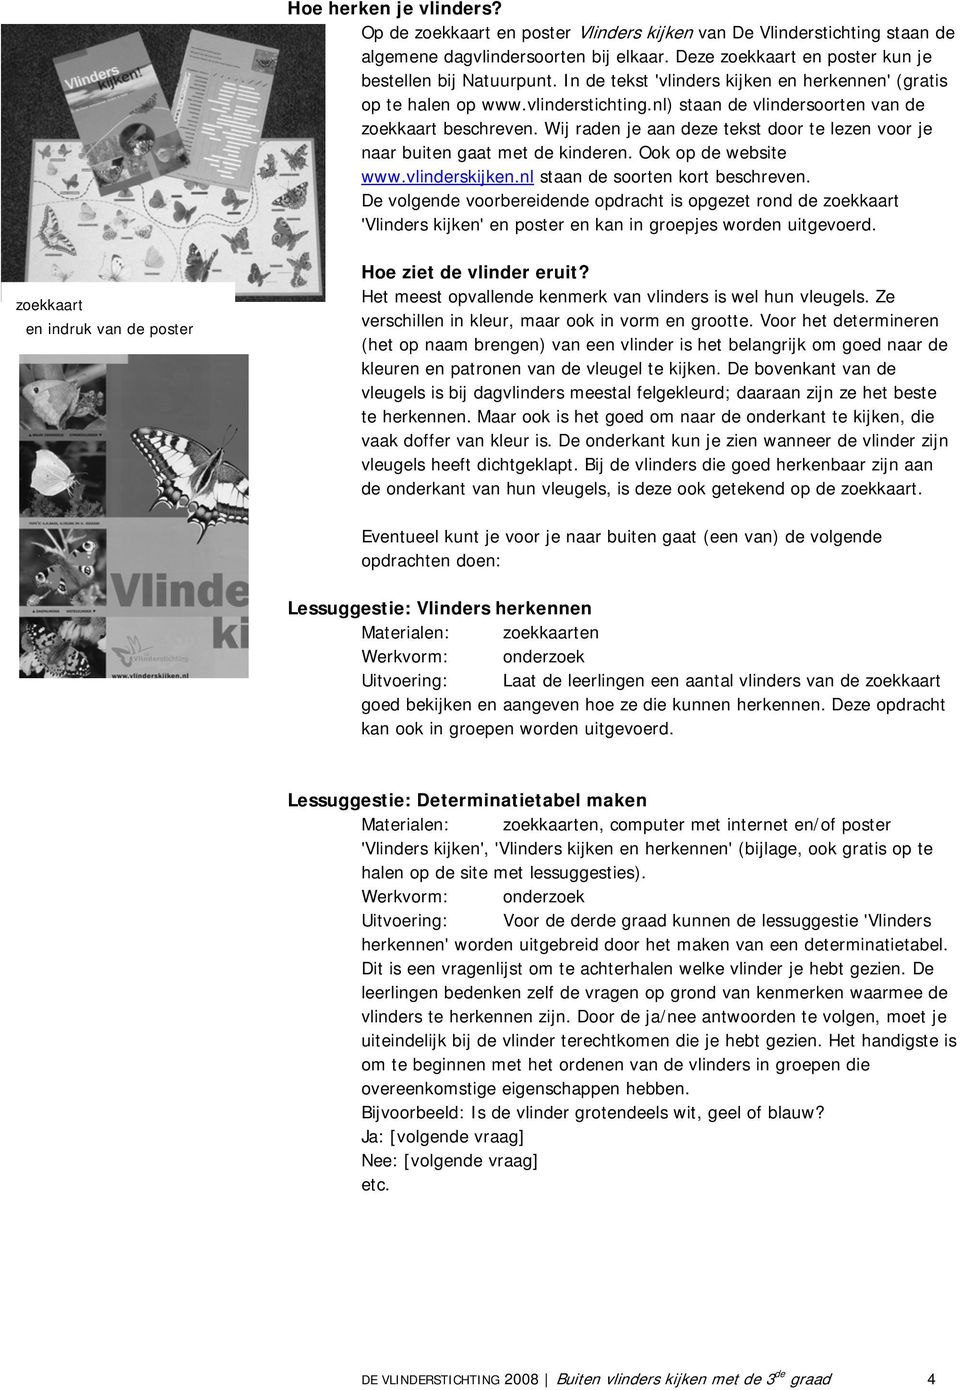 Wij raden je aan deze tekst door te lezen voor je naar buiten gaat met de kinderen. Ook op de website www.vlinderskijken.nl staan de soorten kort beschreven.